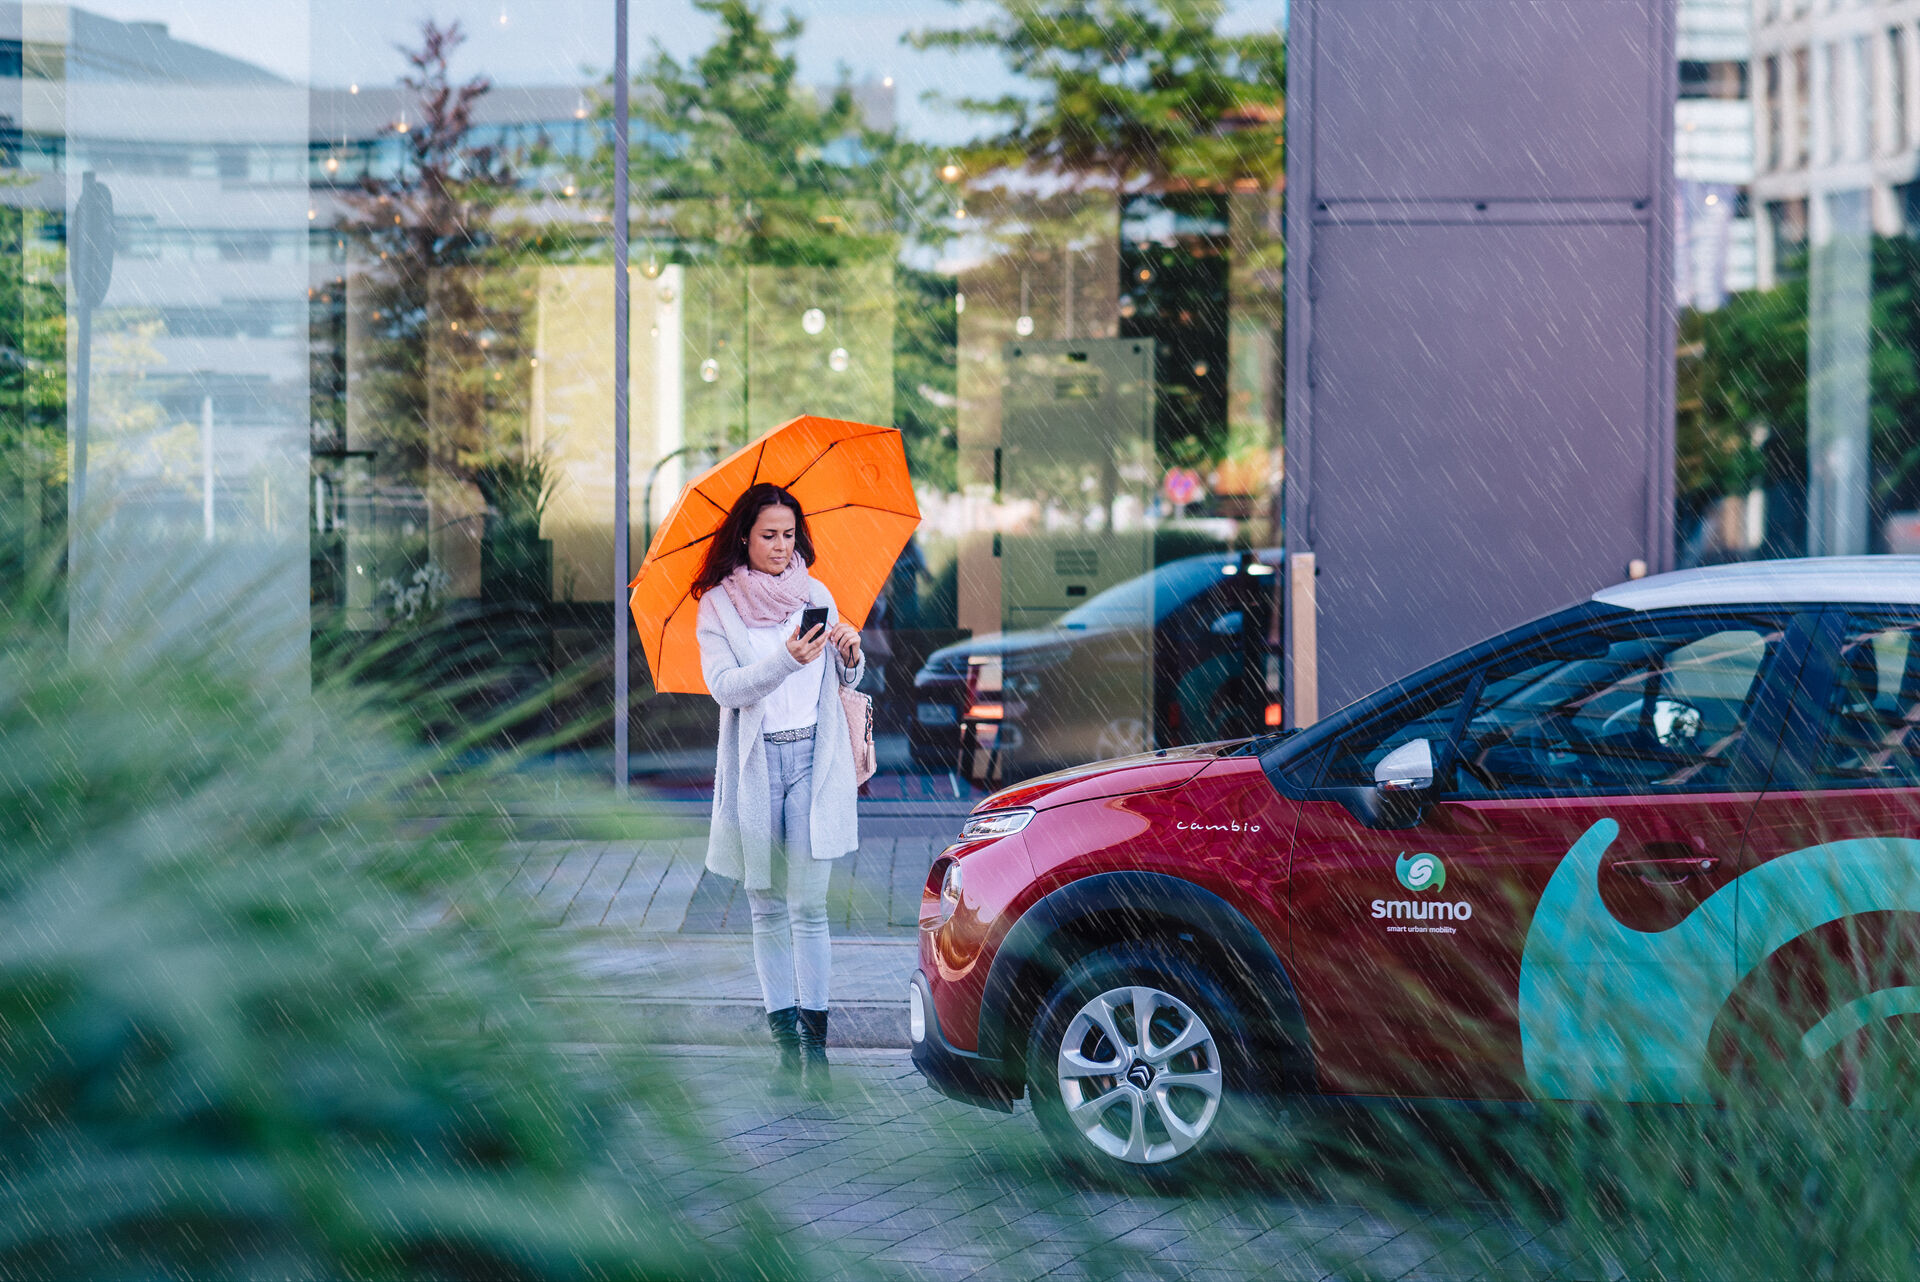 Frau mit orangem Regenschirm läuft an rotem Auto mir dem Schriftzug "smumo" vorbei.